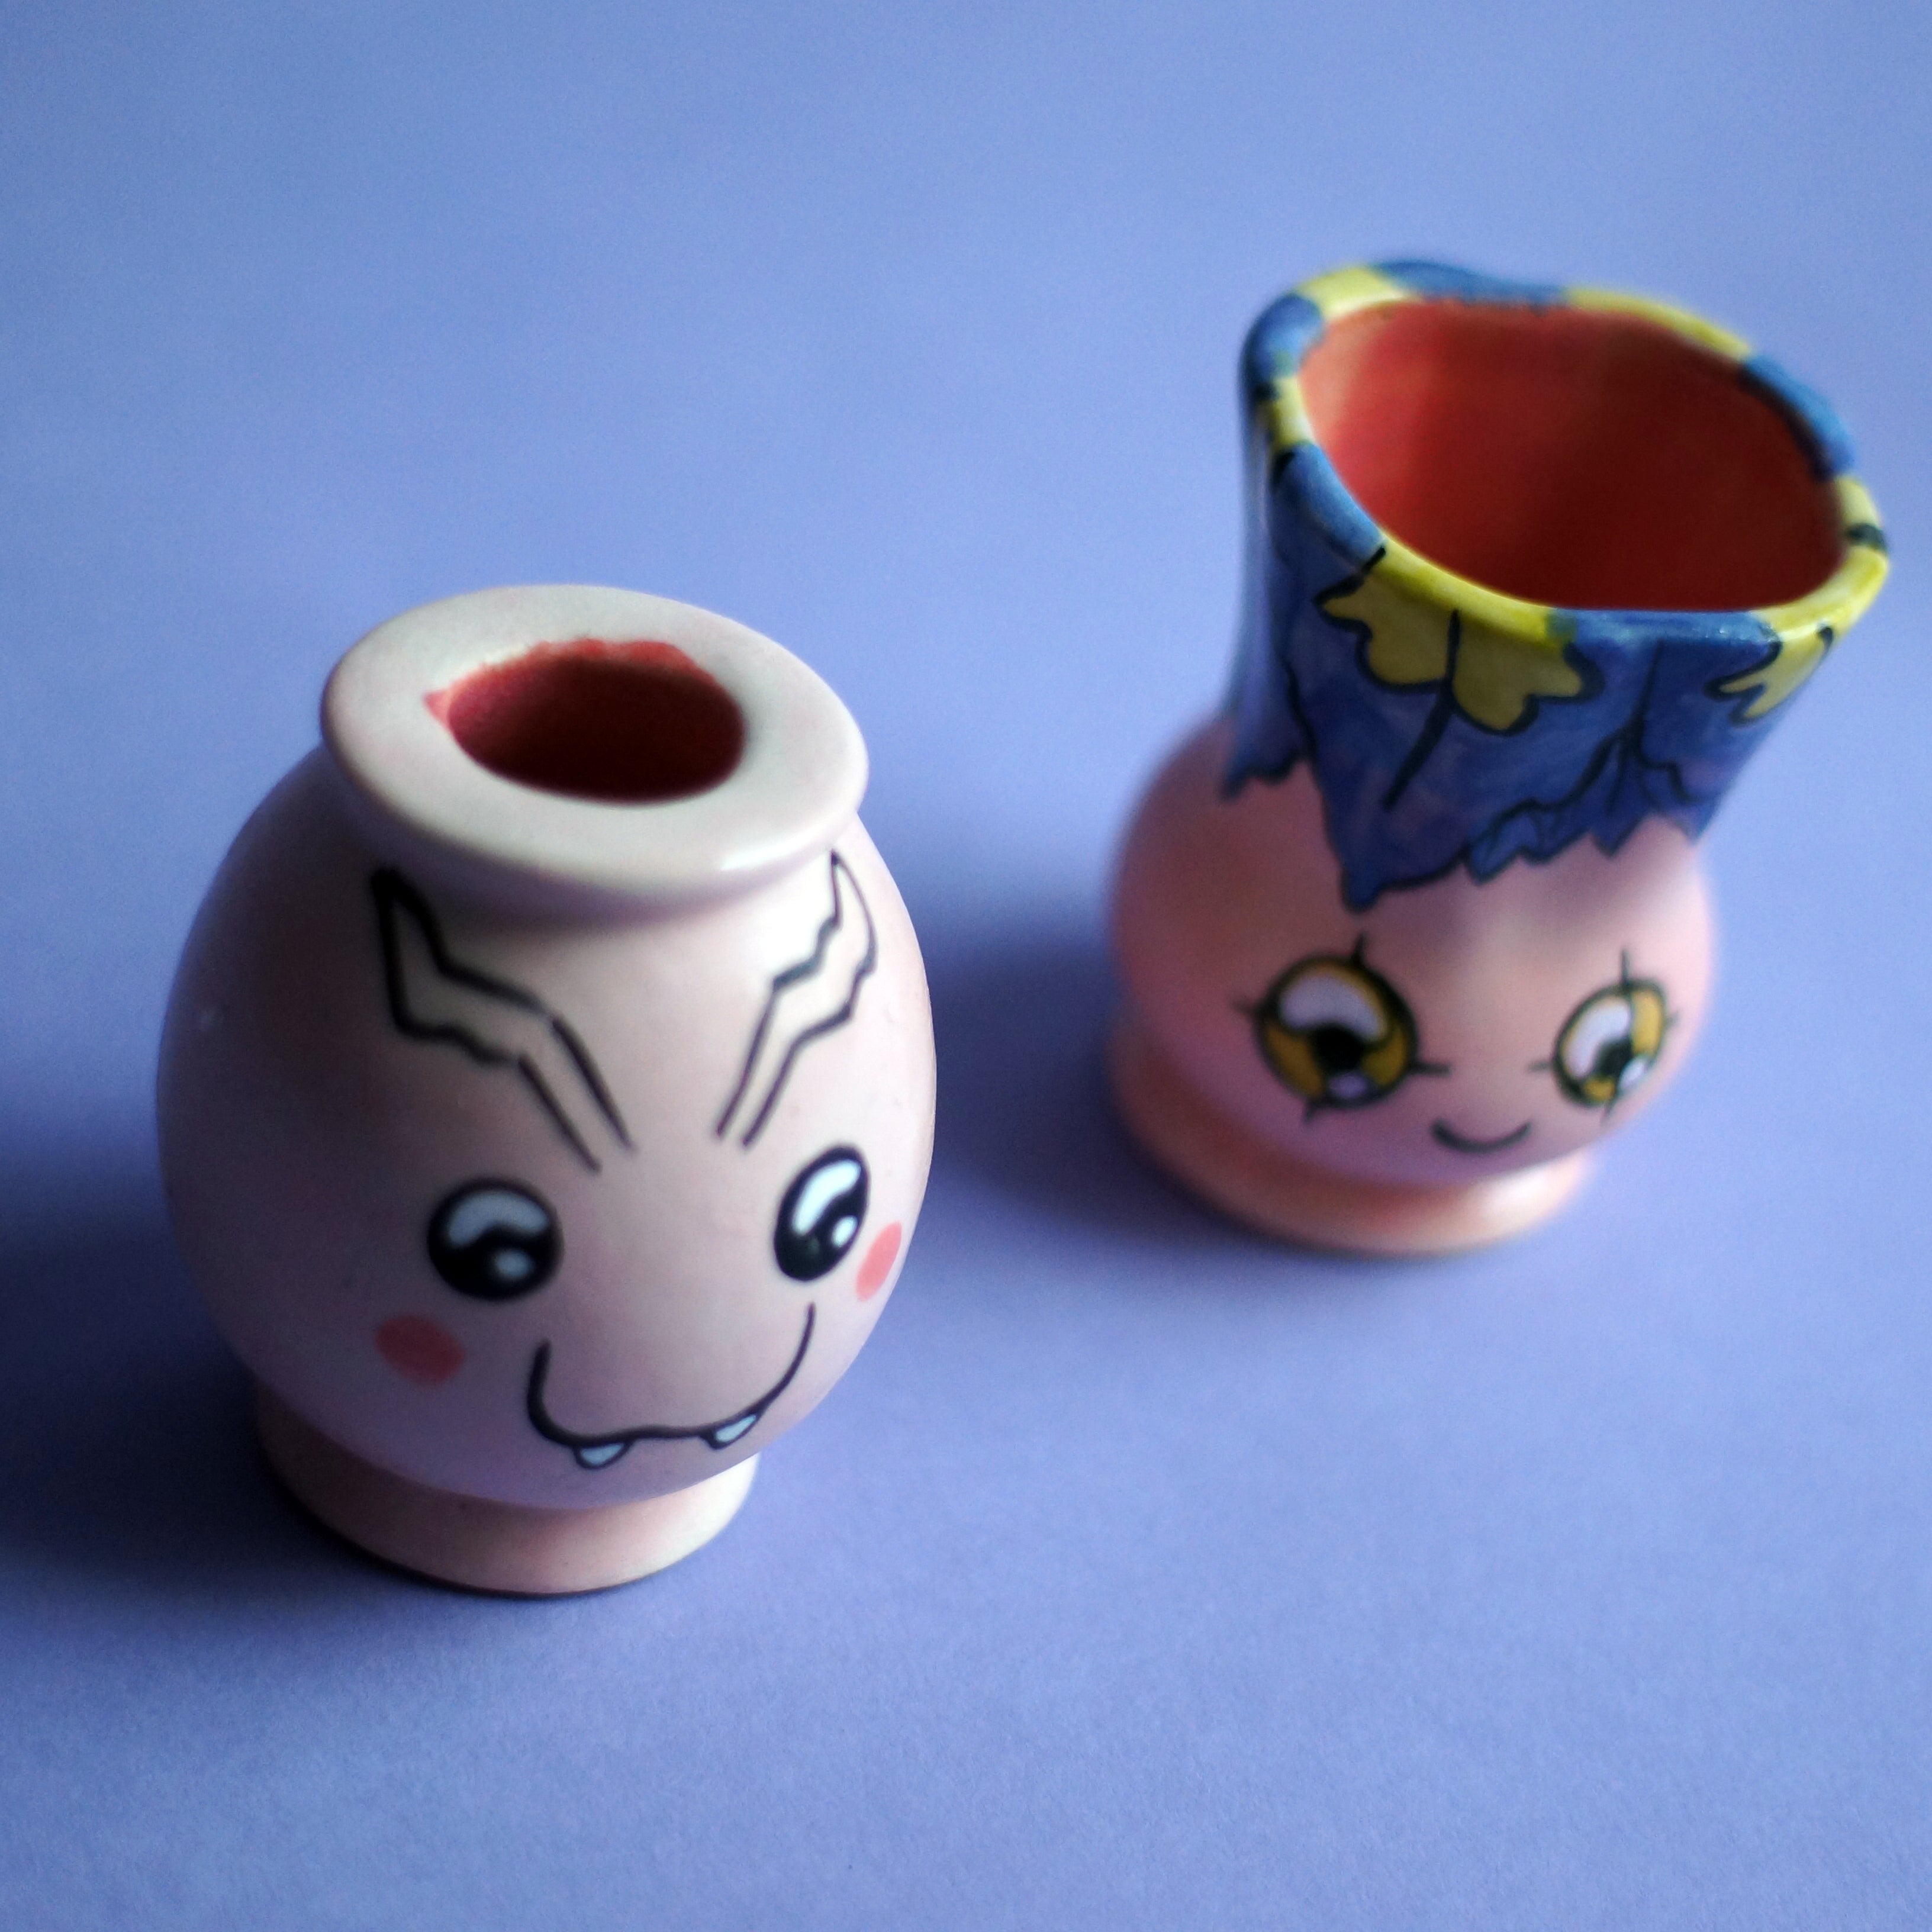 Tokomon & Yokomon mini bud vases